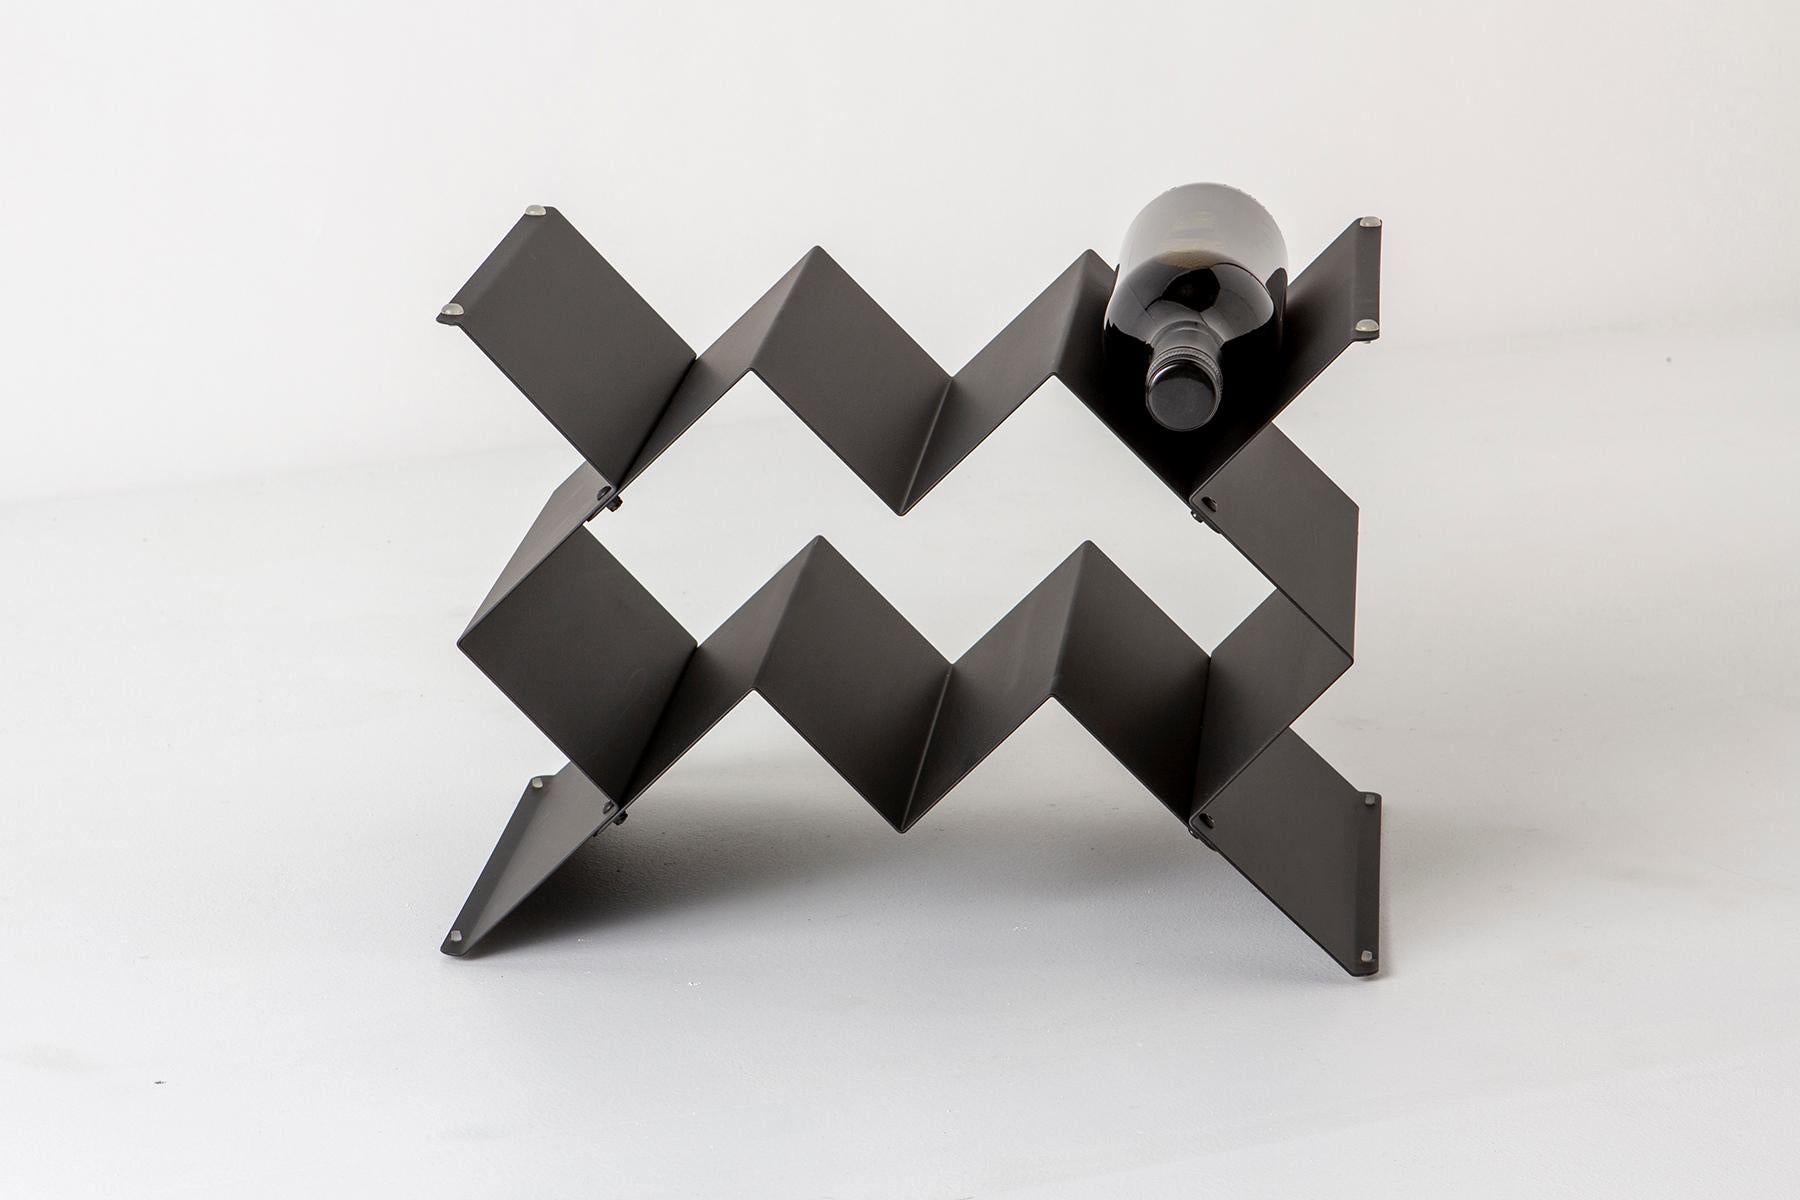 Das Weinregal Fold ist ein vom Brutalismus inspiriertes, modulares Design, das in verschiedenen Größen und Konfigurationen gestapelt werden kann. Hergestellt aus gefaltetem Blech mit pulverbeschichteter Oberfläche. Das Ziel der Fold-Kollektion ist